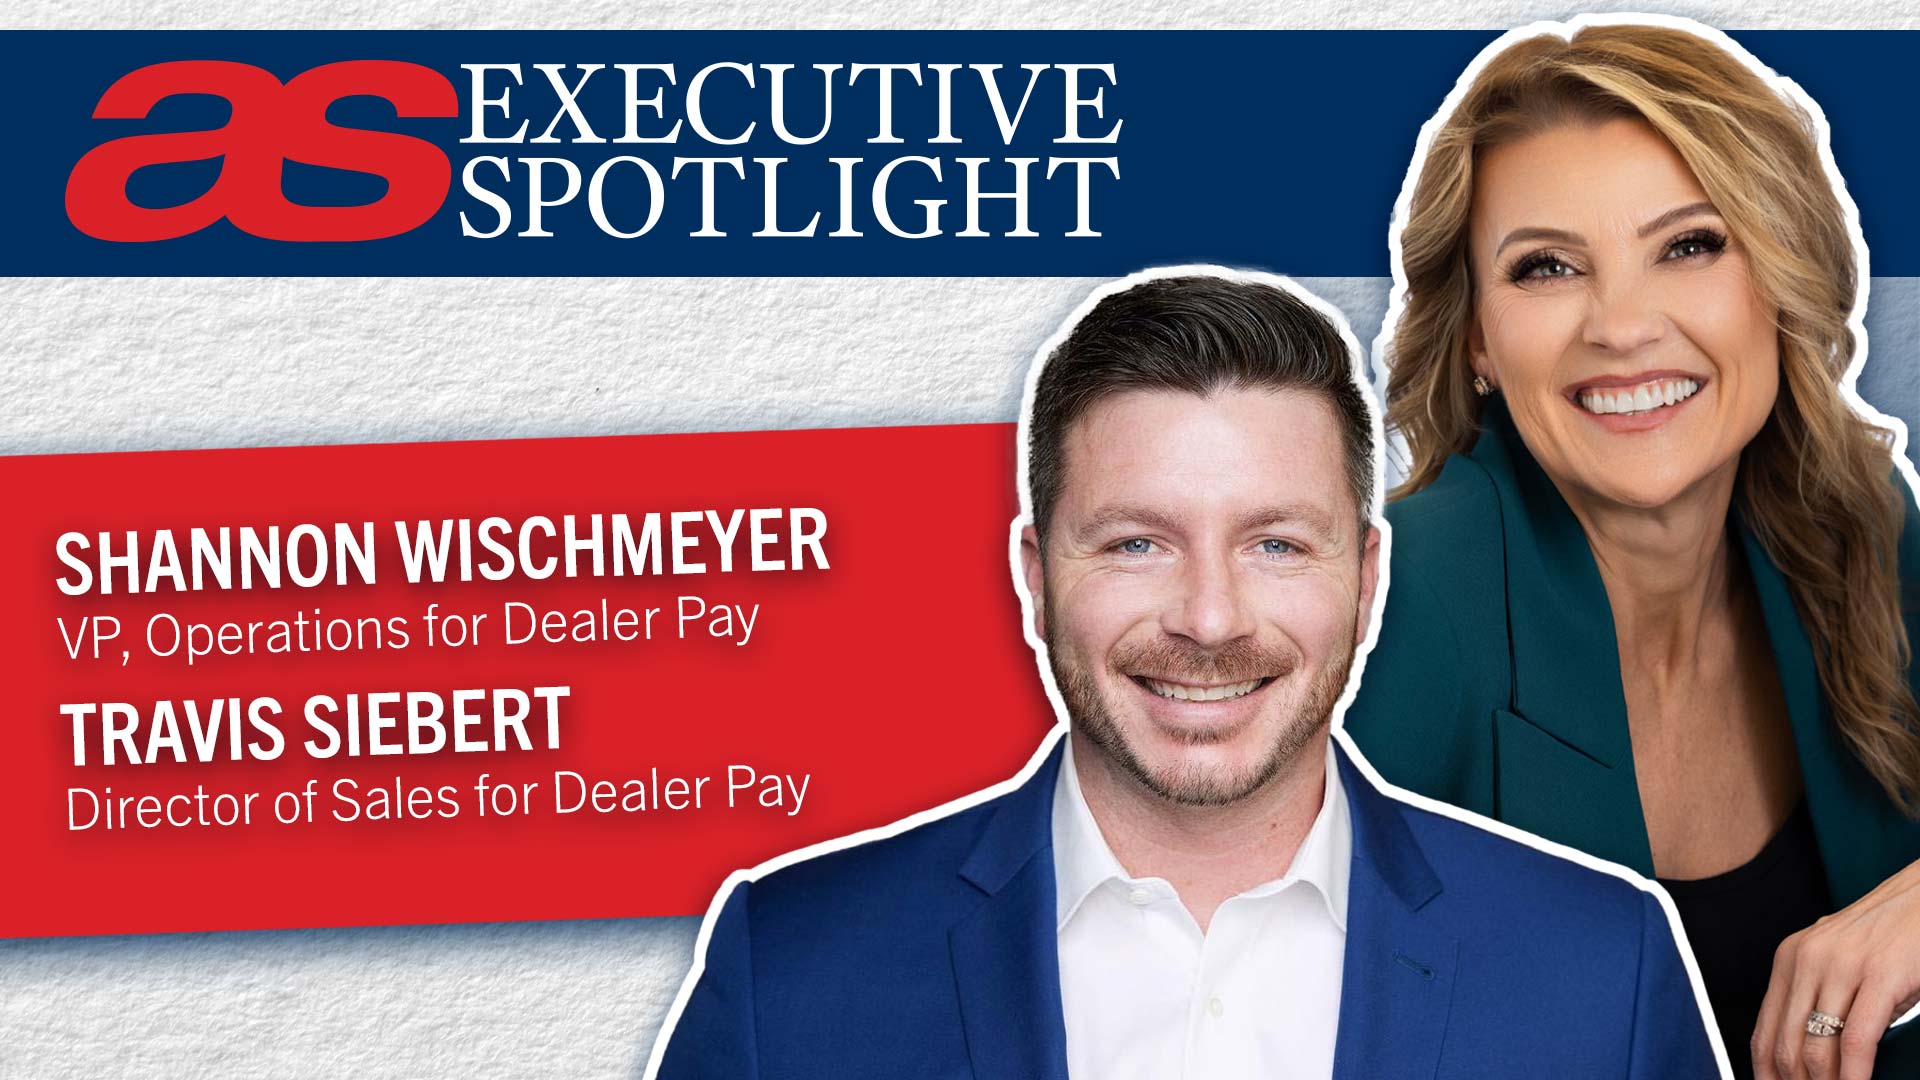 Shannon Wischmeyer and Travis Siebert of Dealer Pay